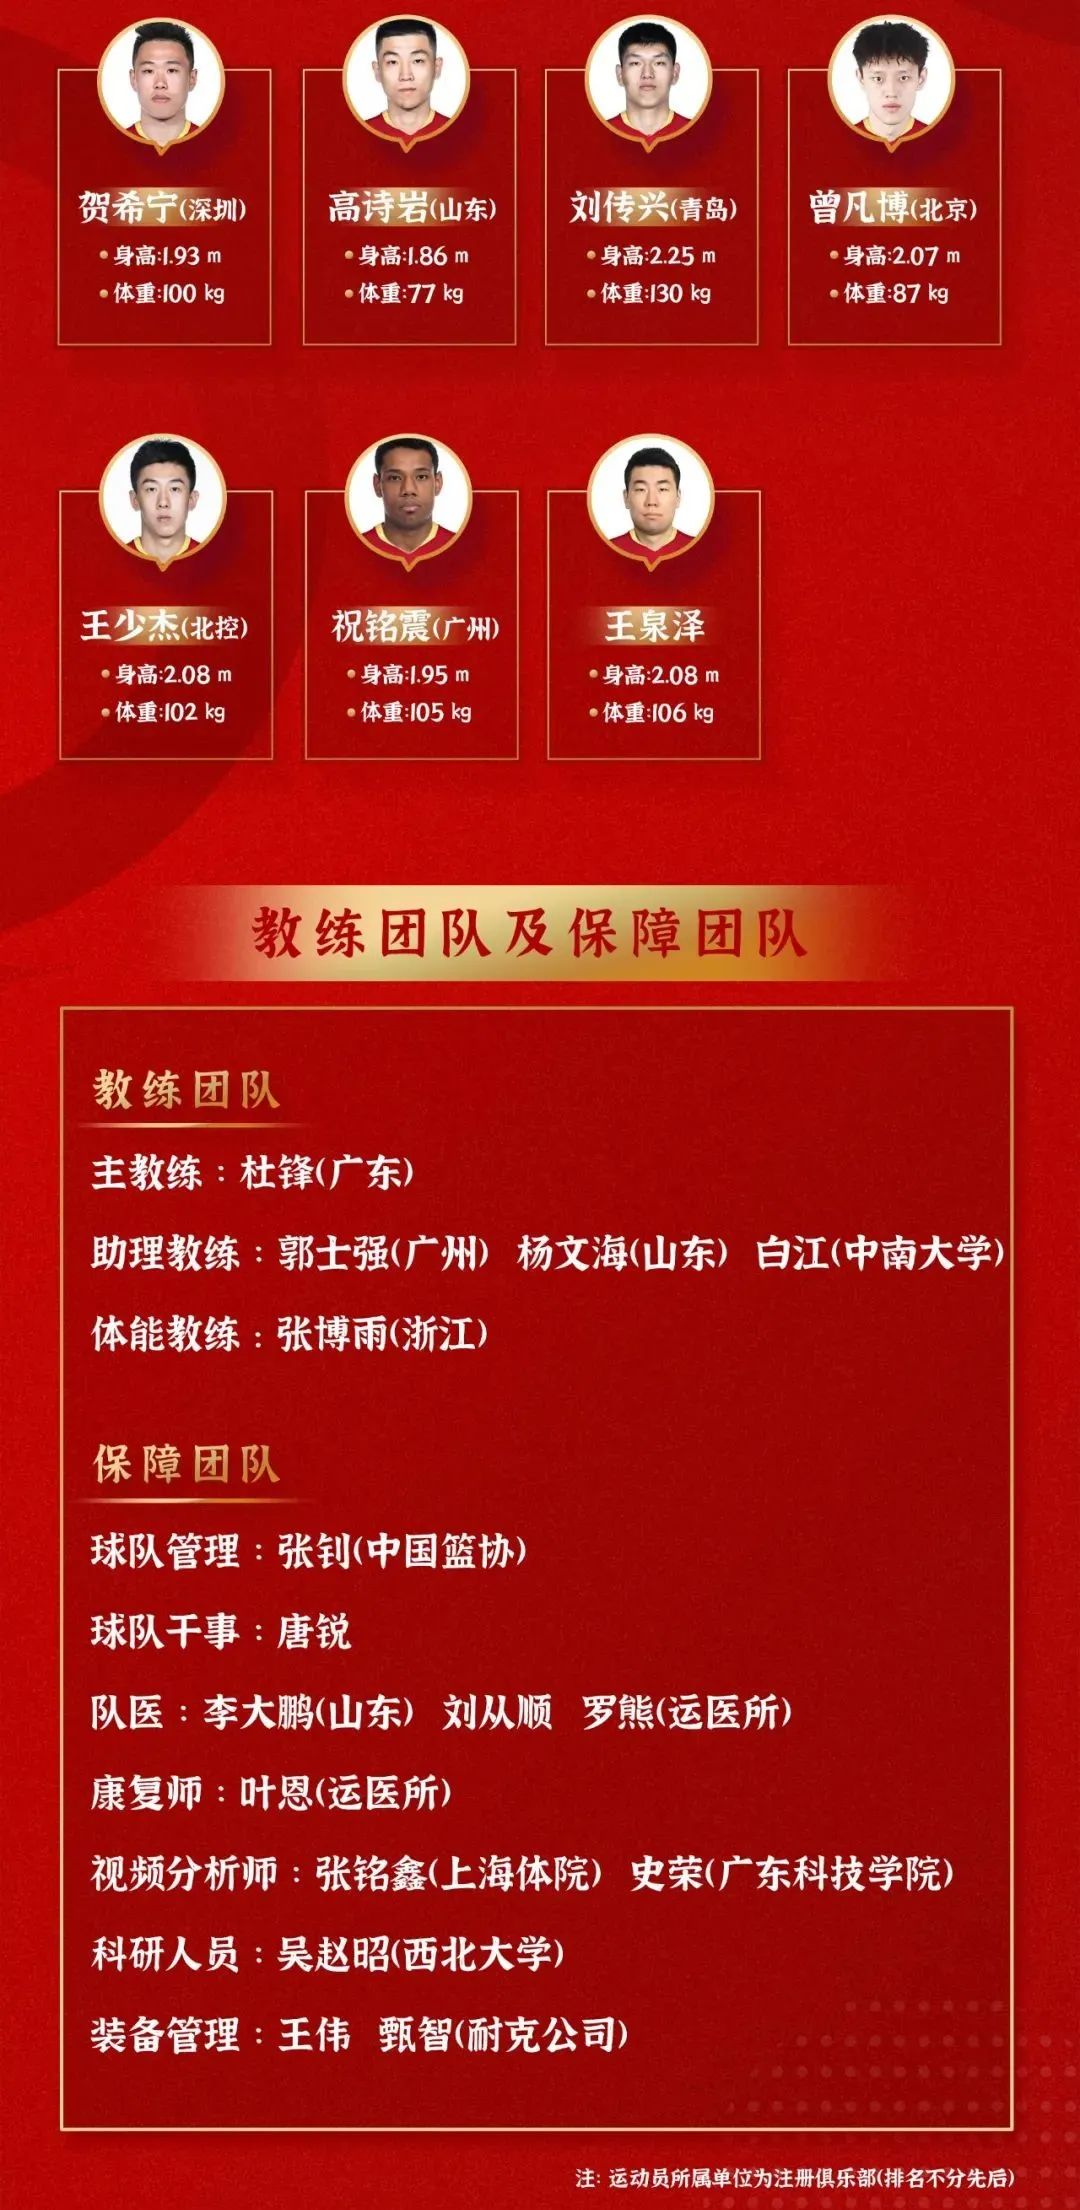 ac米兰队员最新名单_中国冰壶女队队员最新名单_最新国家篮球队员名单